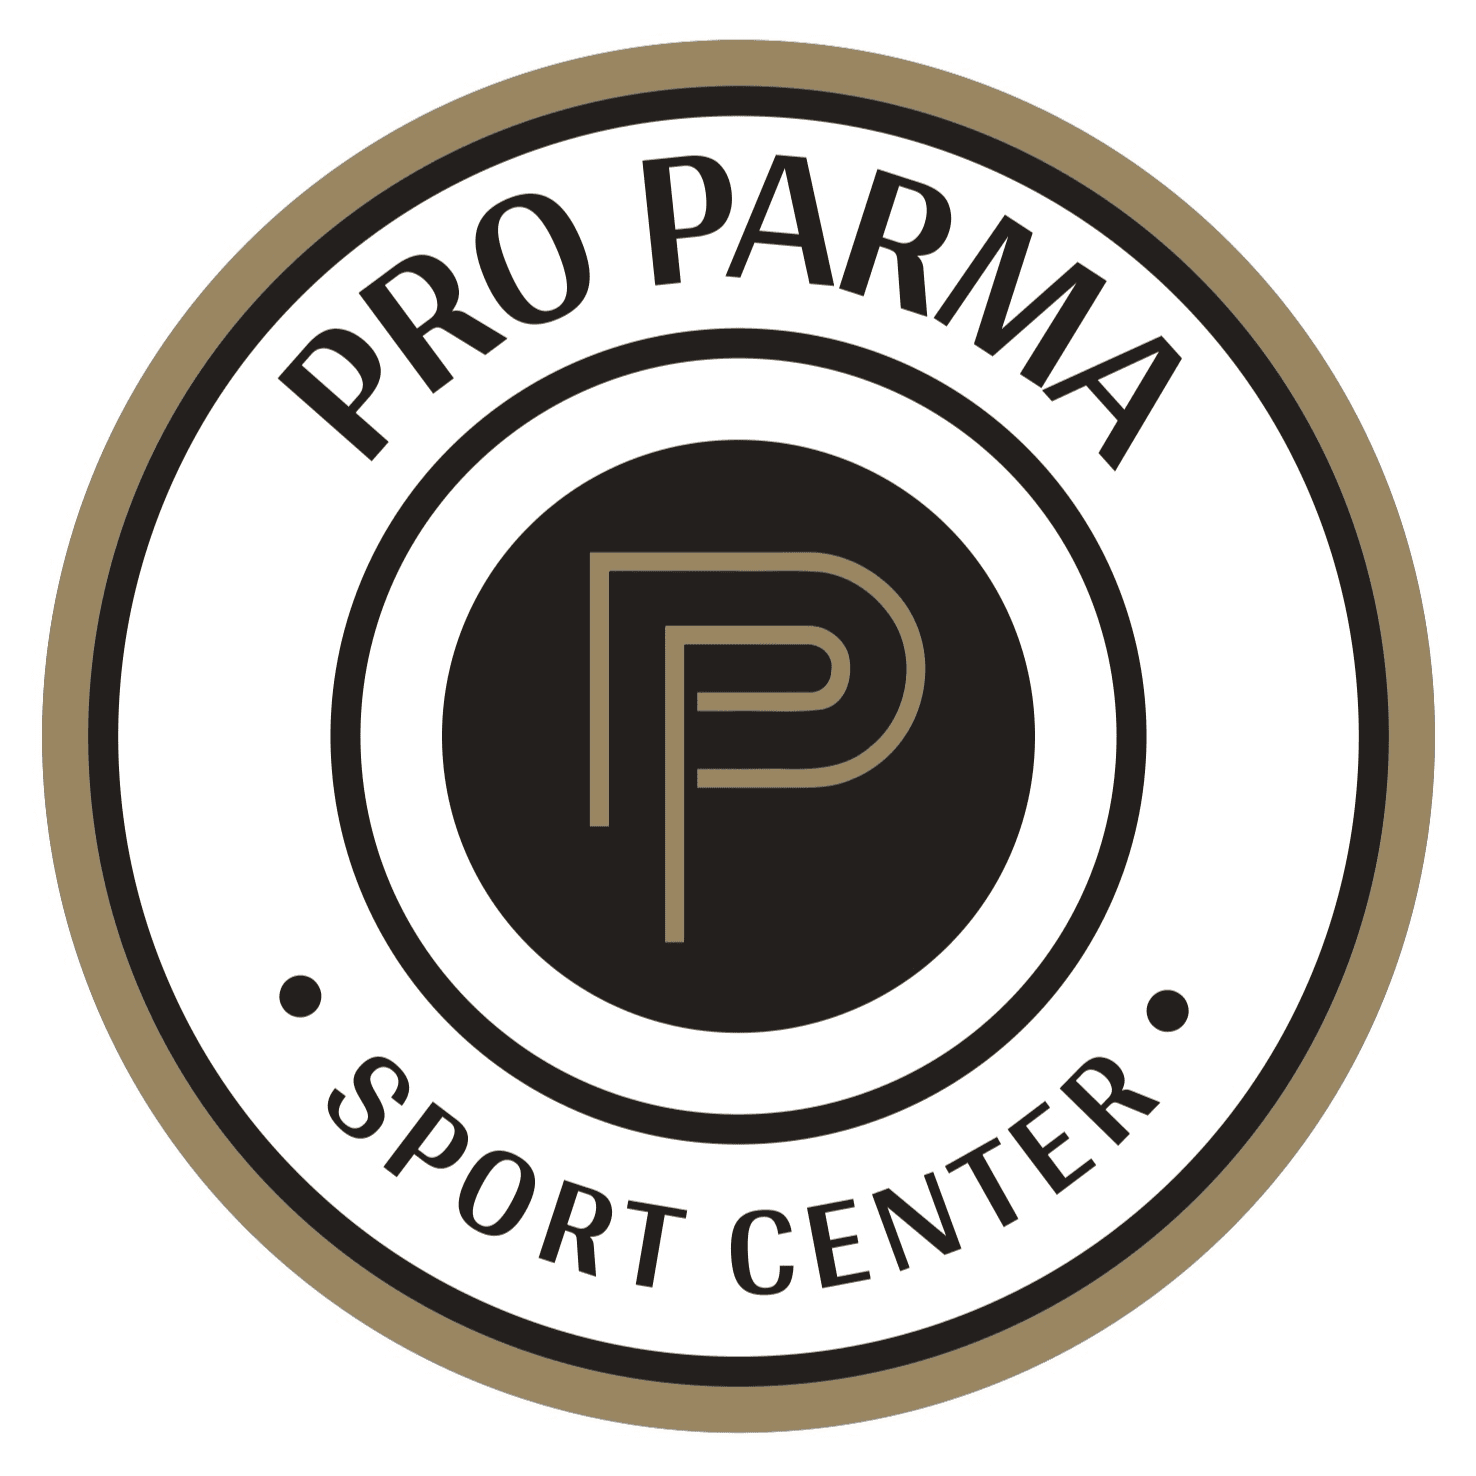 Pro Parma Sport Center